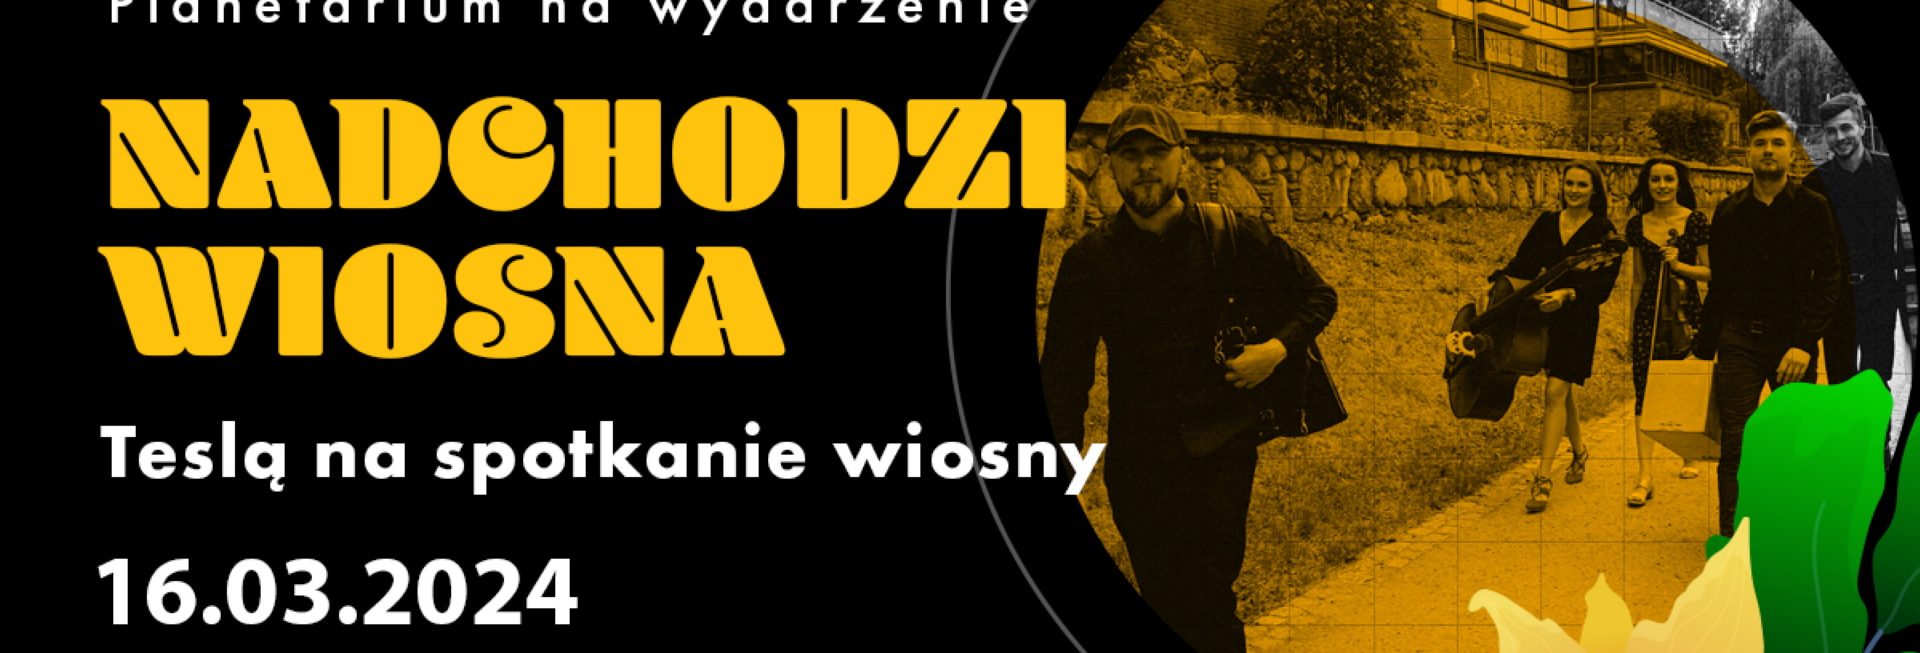 Plakat zapraszający w sobotę 16 marca 2024 r. do Olsztyna na pokazy i koncert "Nadchodzi Wiosna" Olsztyńskie Planetarium Olsztyn 2024.